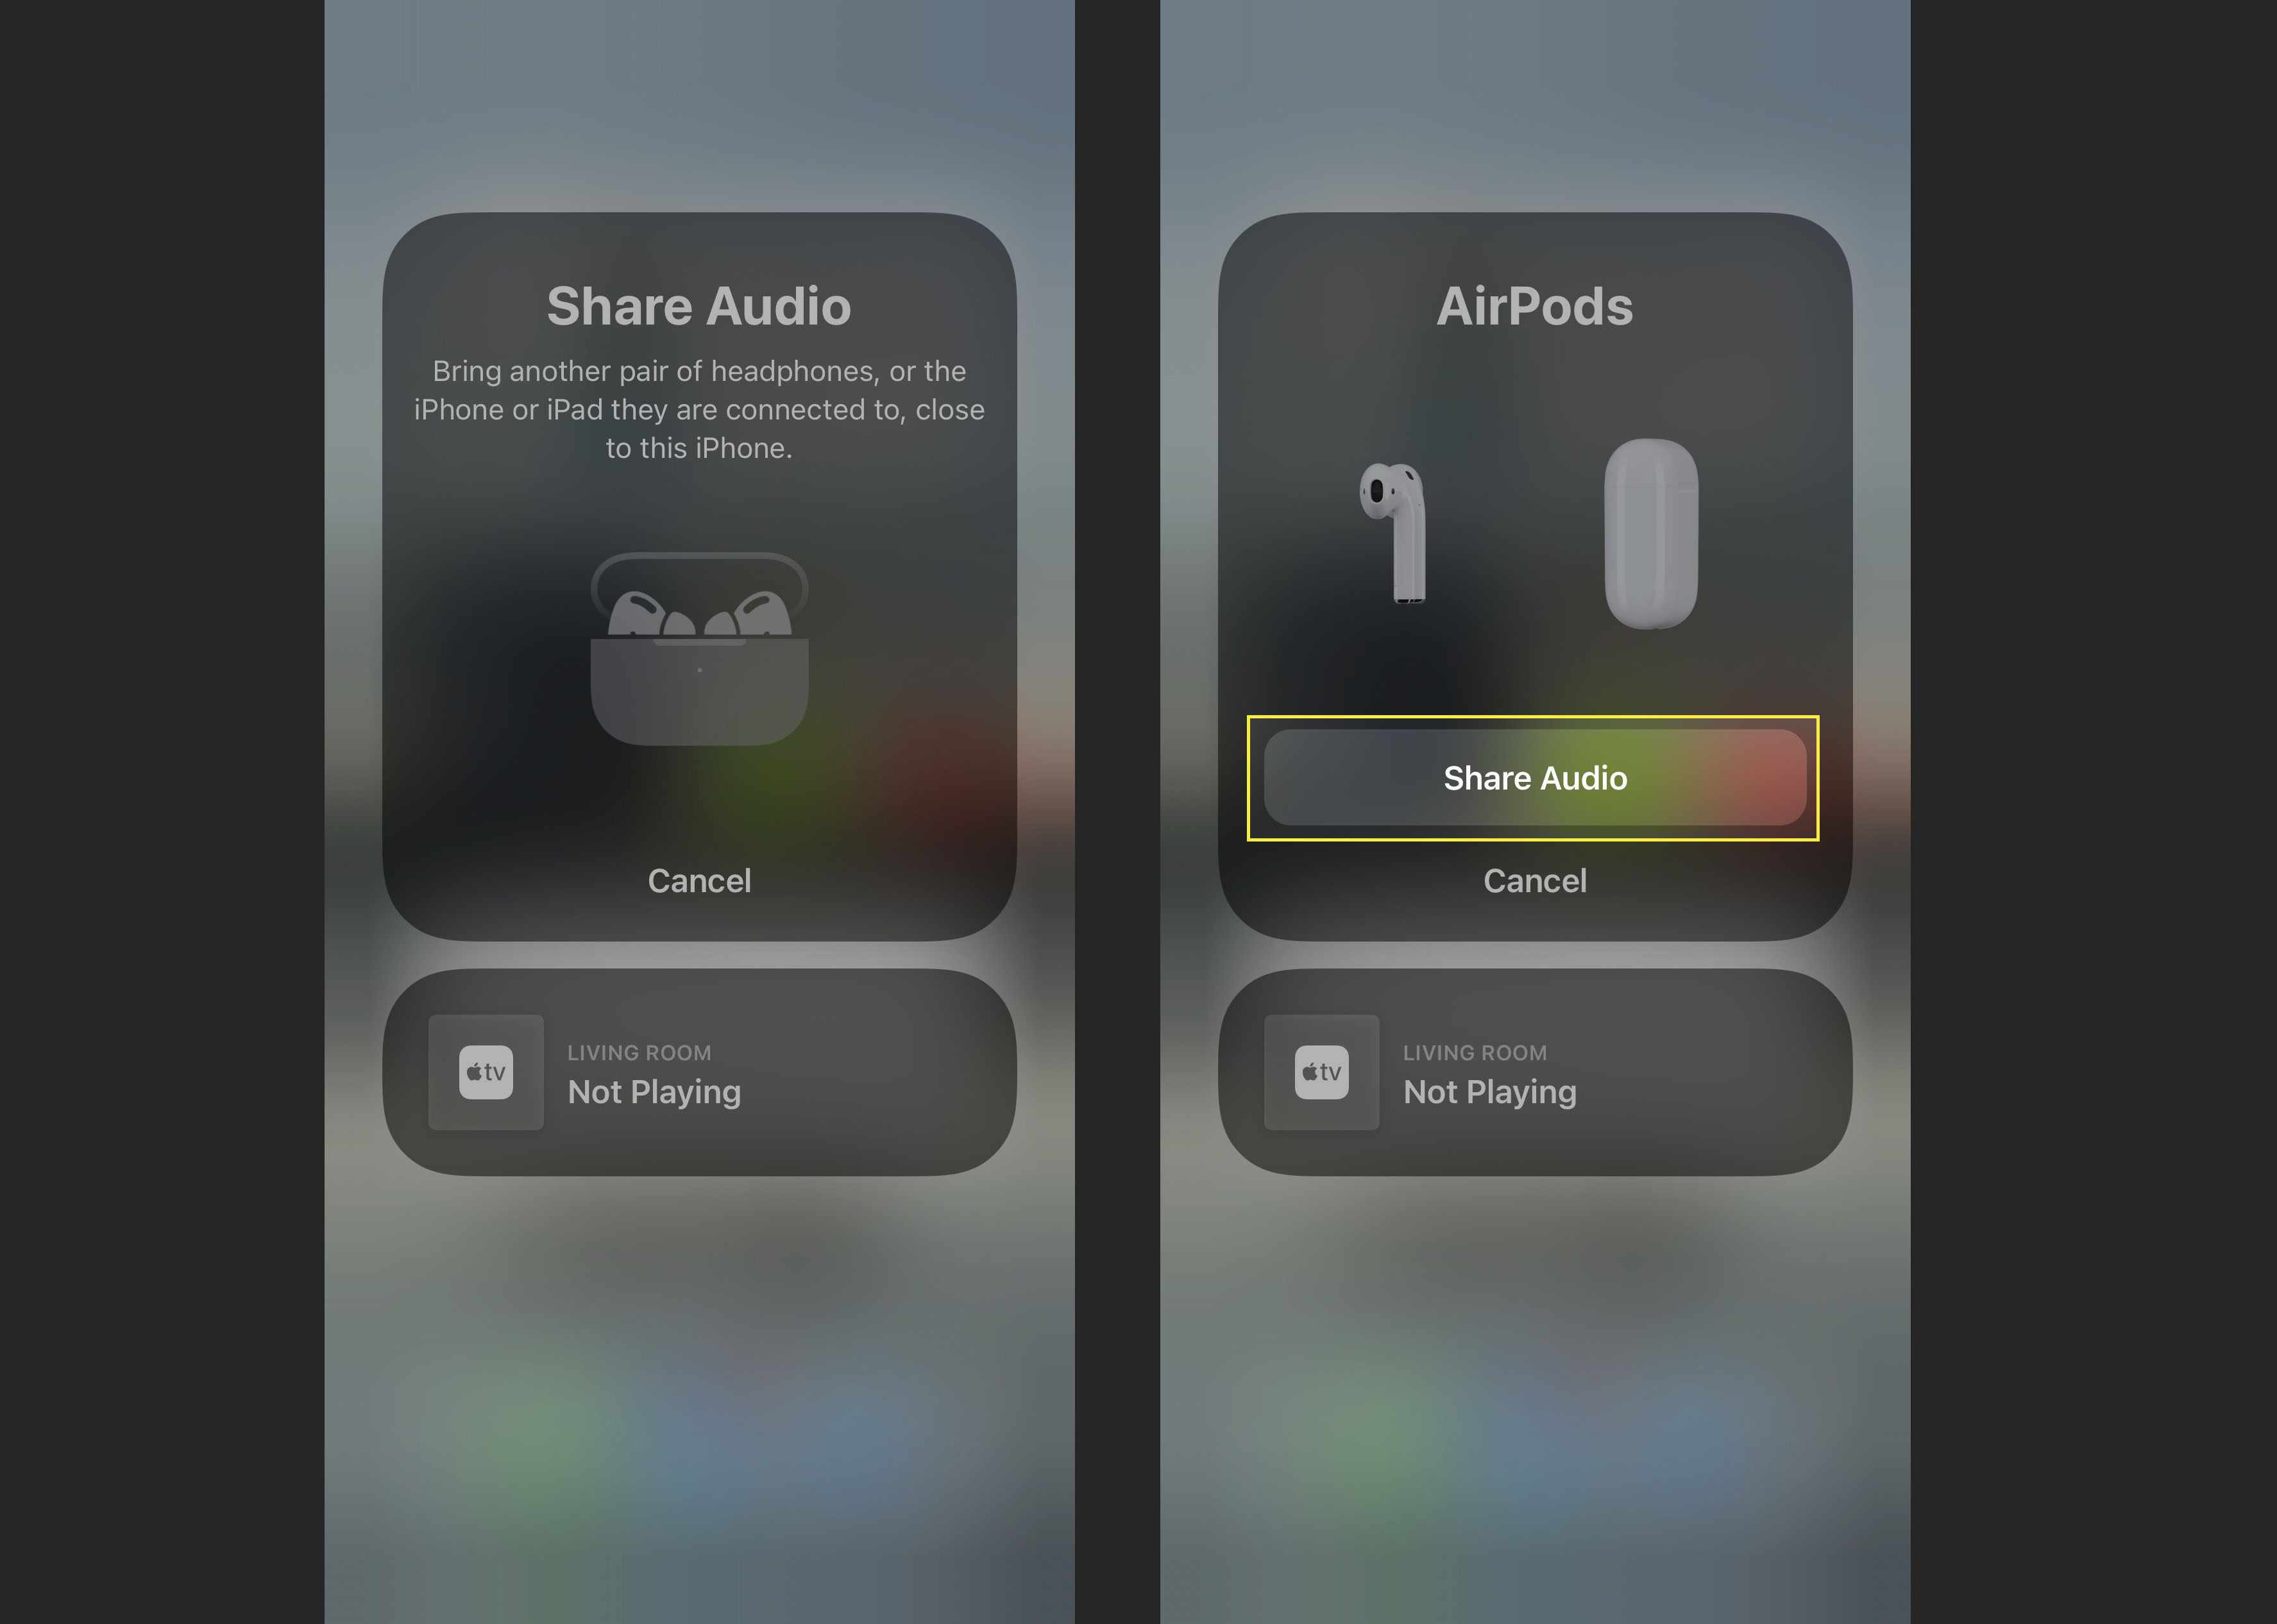 De Share Audio-knop om twee sets AirPods op één iPhone aan te sluiten.